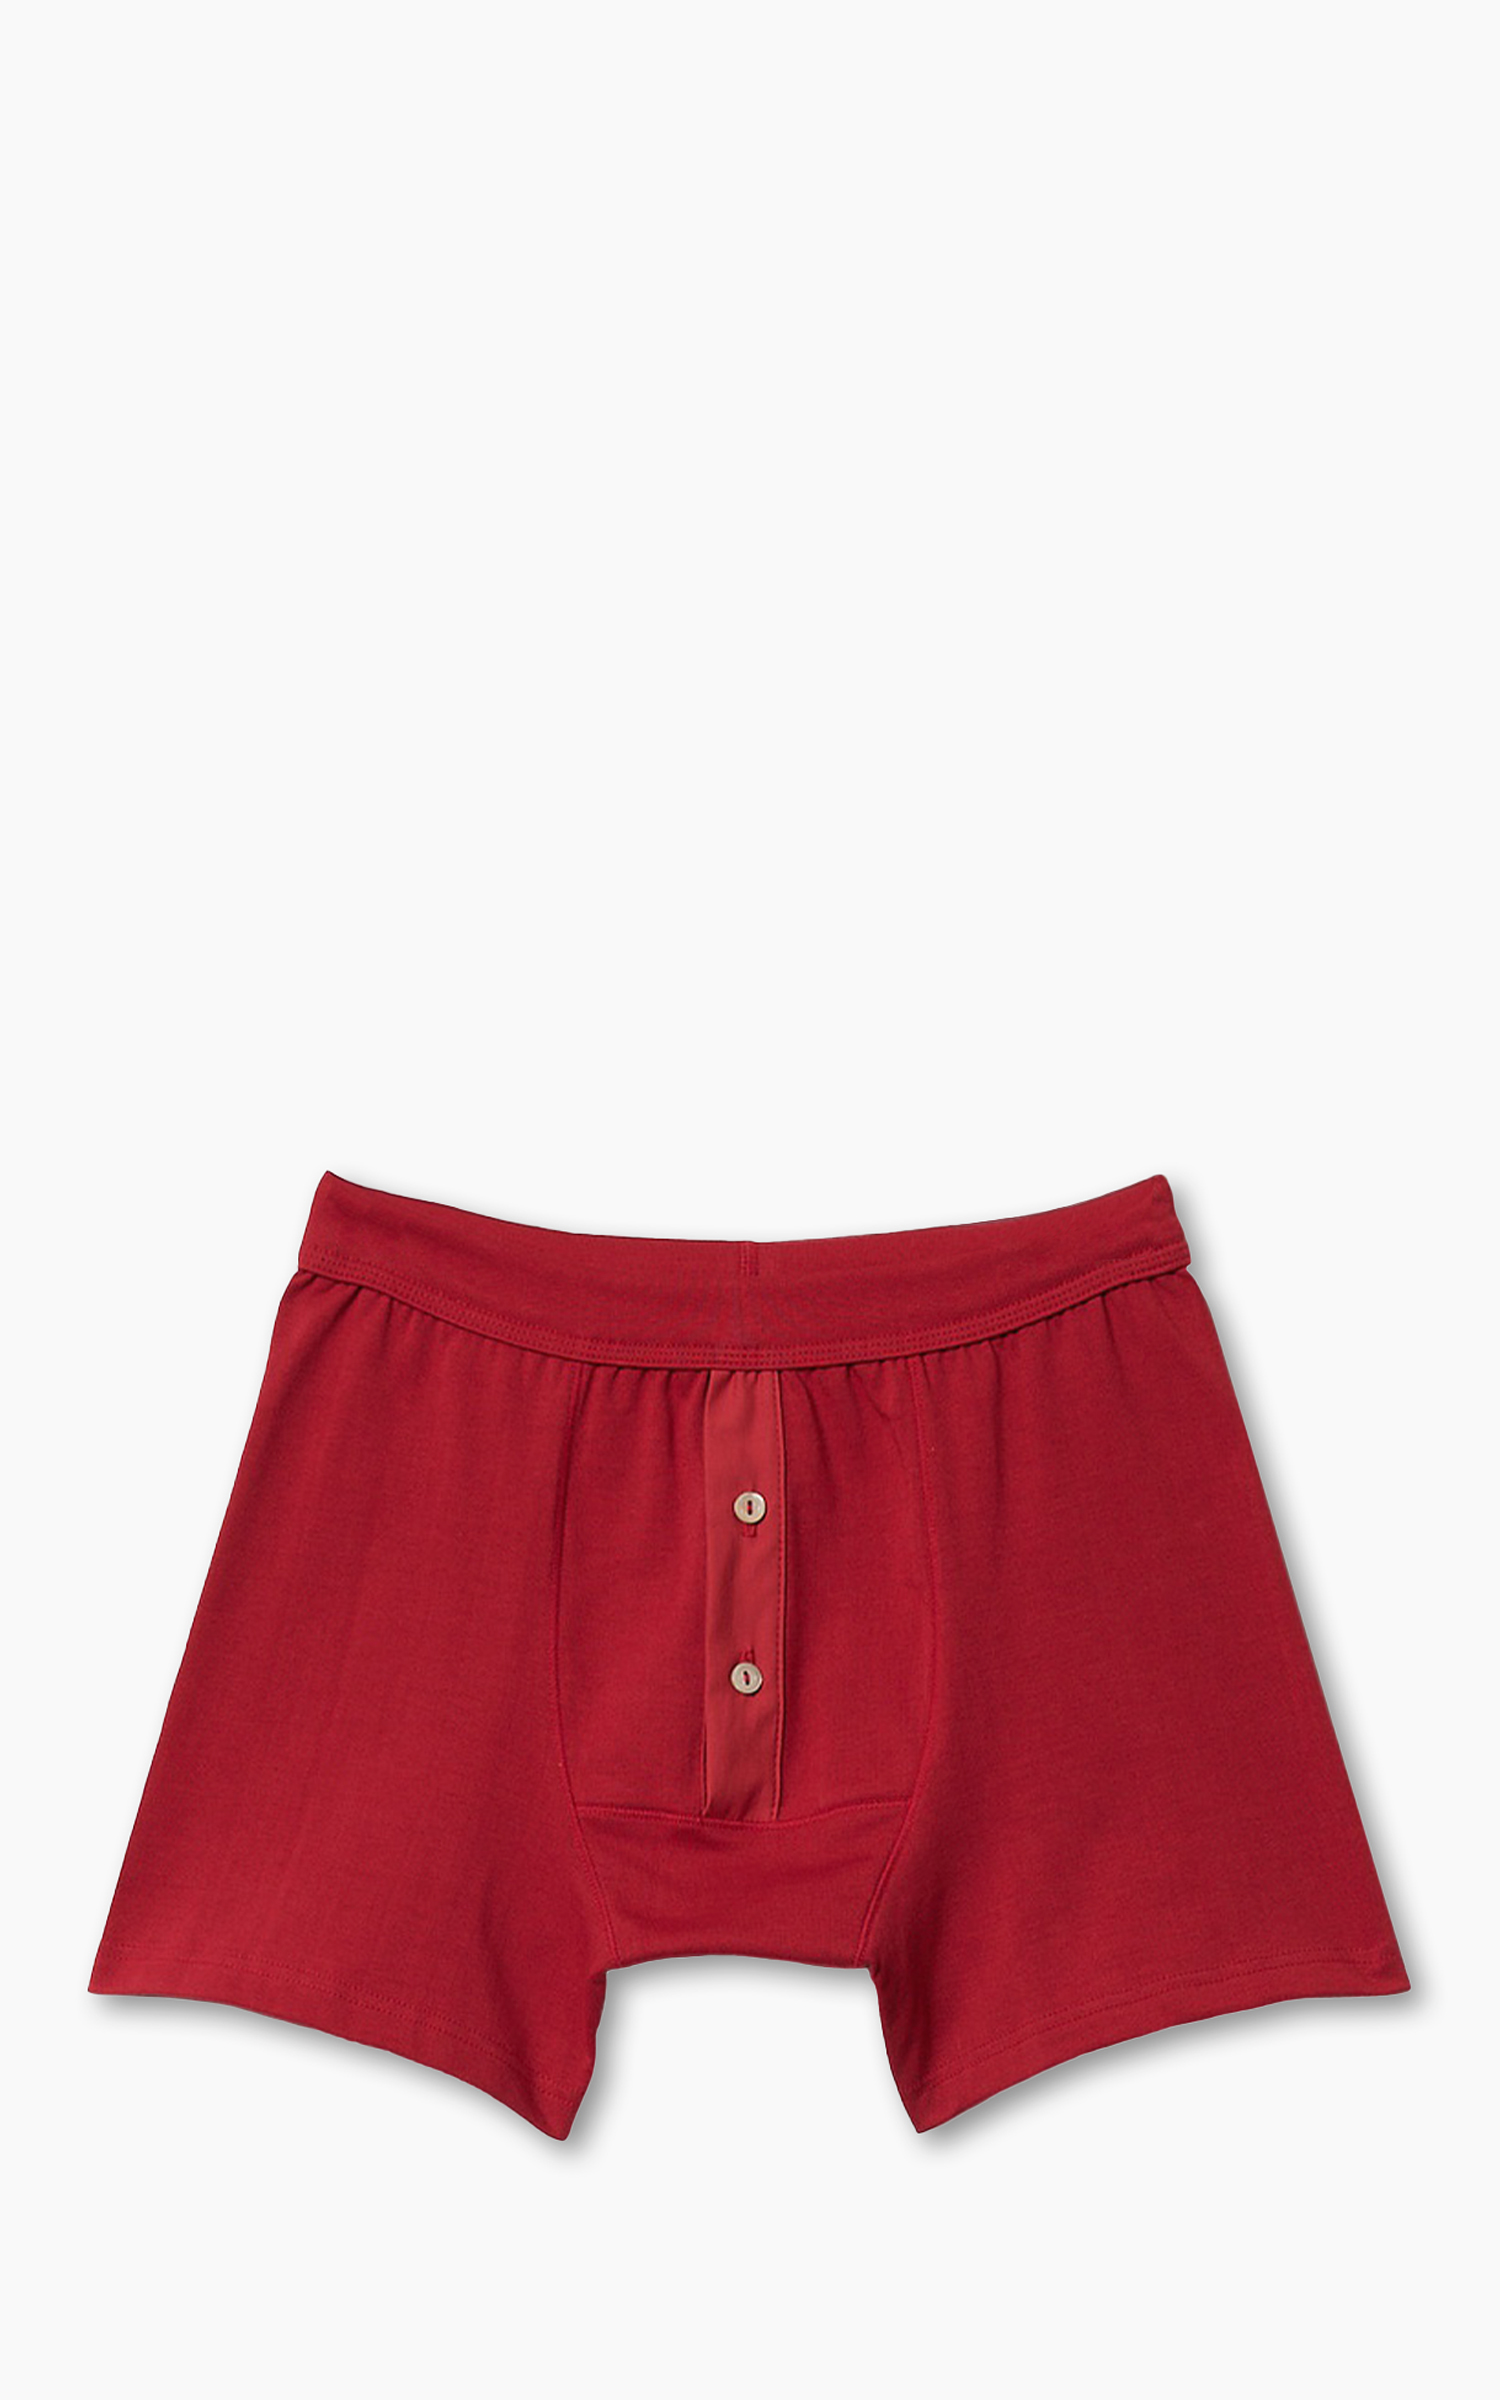 Merz b. Schwanen 255 Button Facing Underpants Red | Cultizm